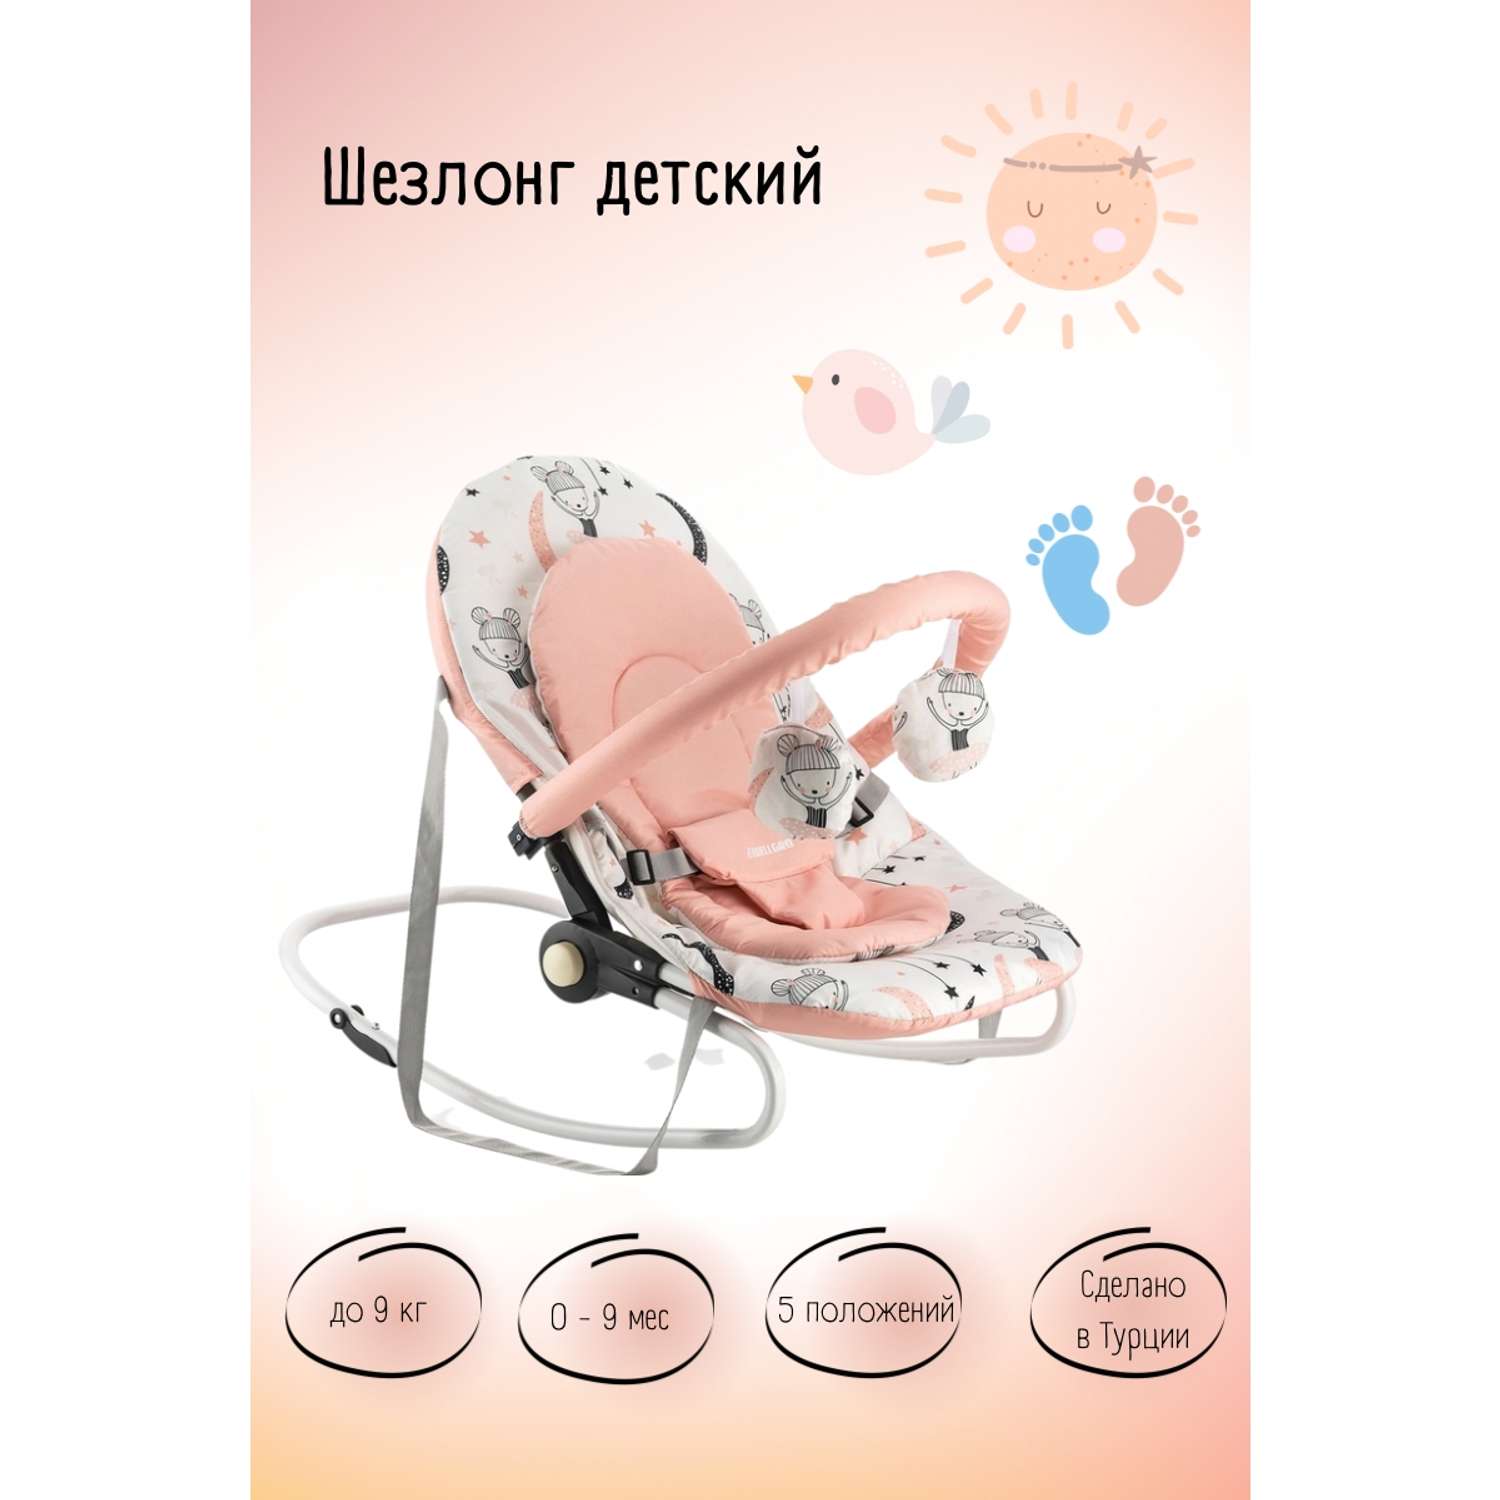 Шезлонг для новорожденных DEDE детское кресло качалка - фото 2